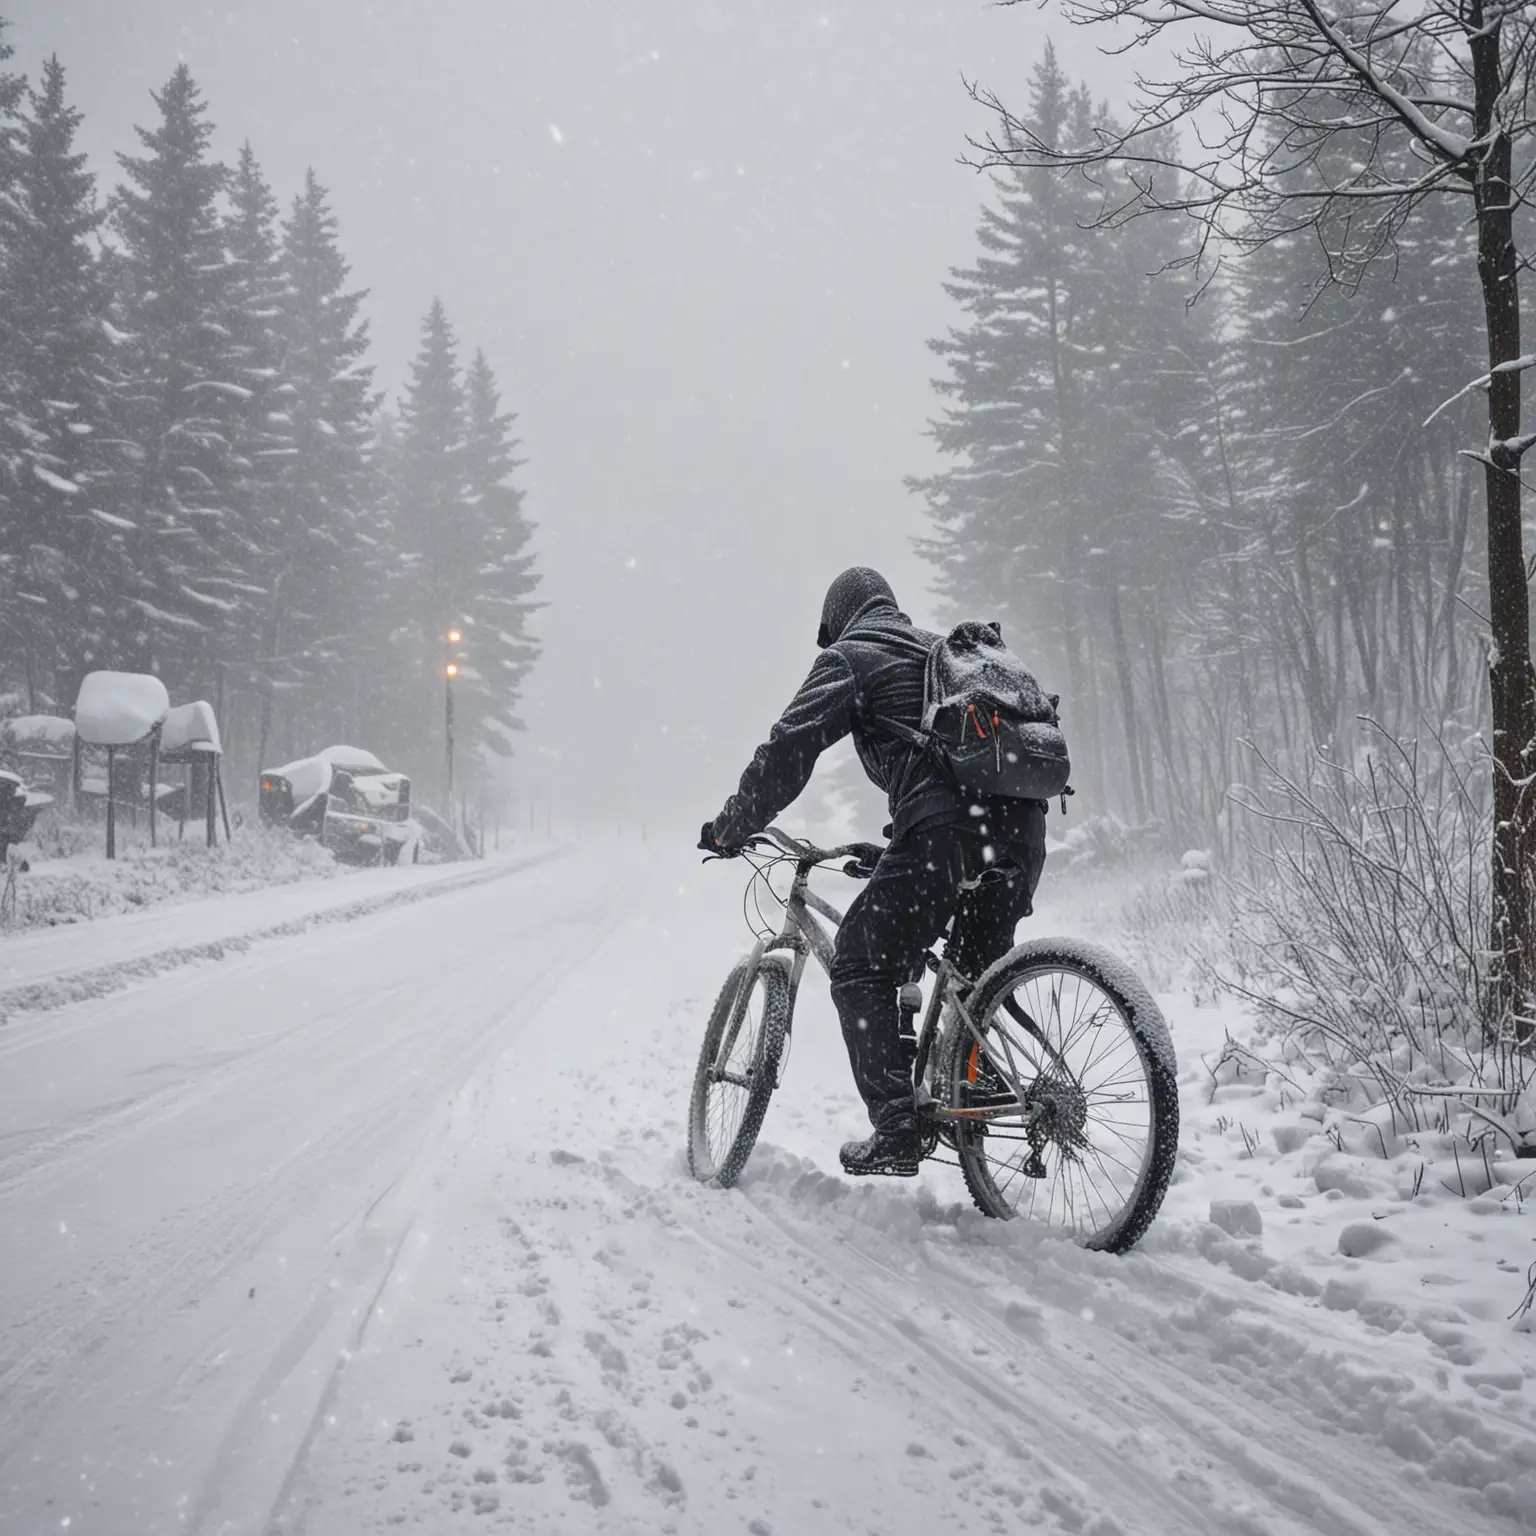 śnieżyca i wichura w górach, zmartwiona postać na rowerze 